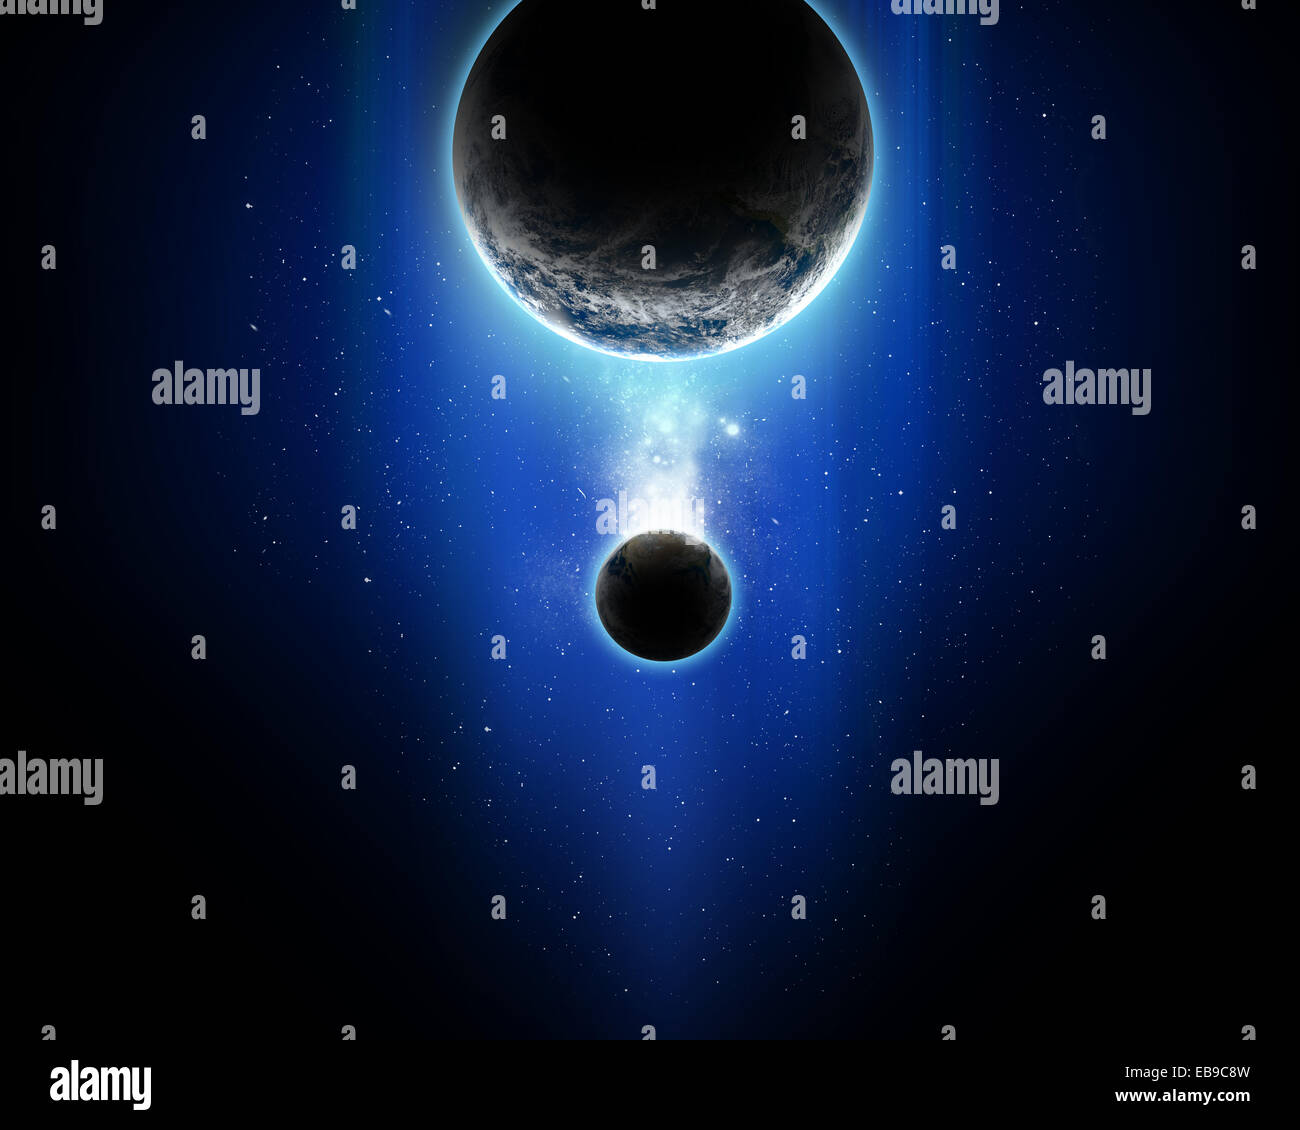 3D-Raum Szene mit Planeten - Elemente dieses Bildes, eingerichtet von der NASA Stockfoto